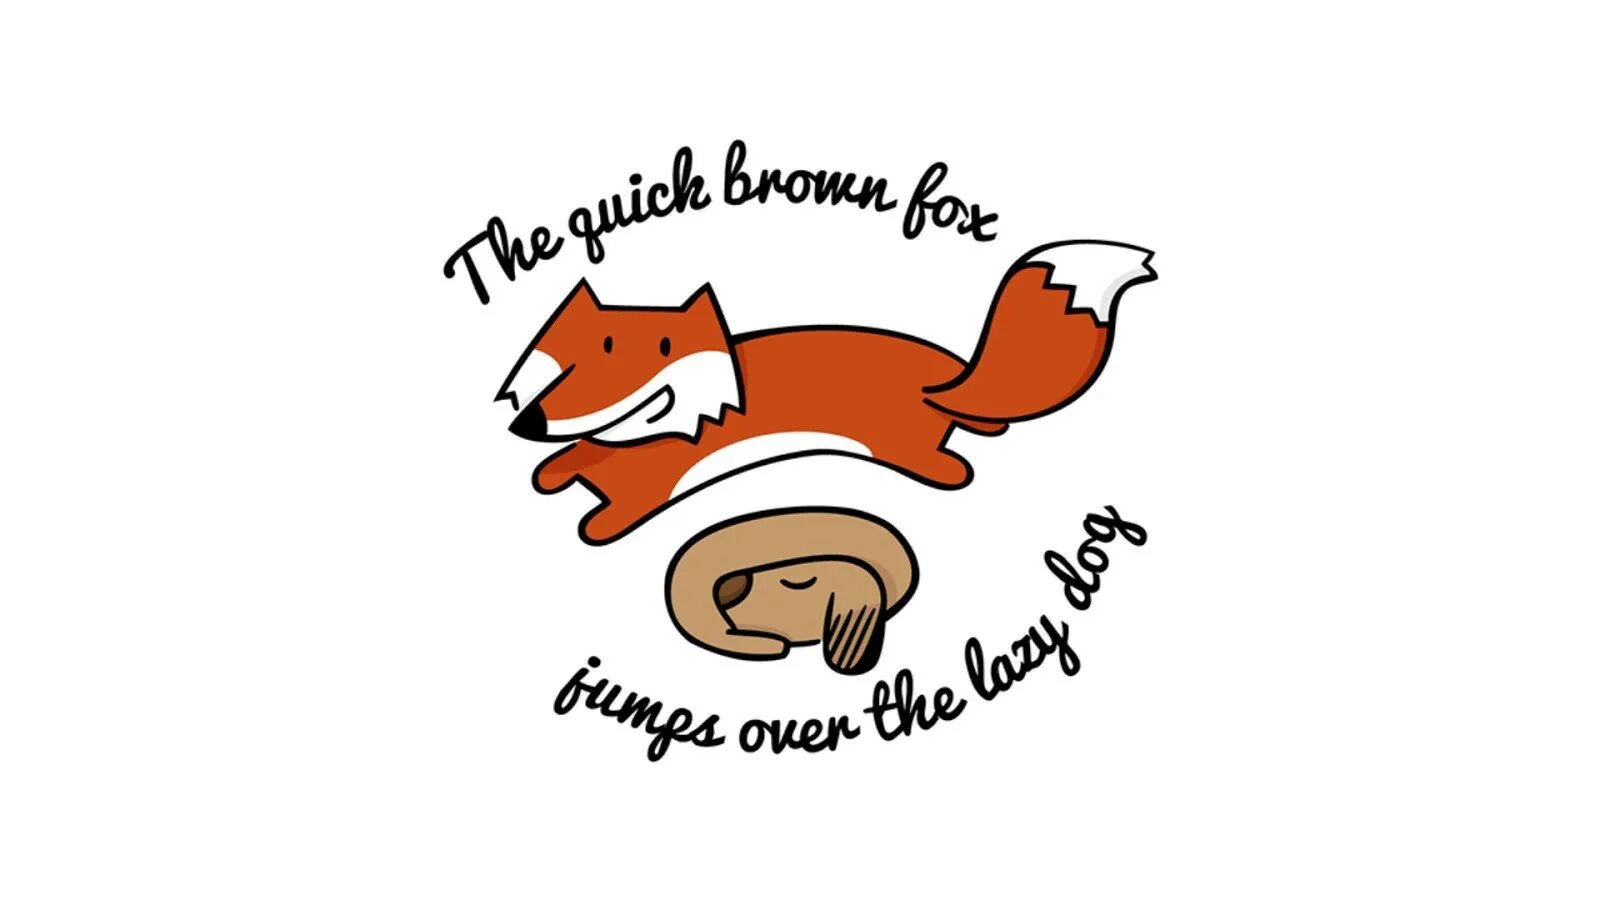 The quick brown. Панграмма. Лиса логотип. Быстрая коричневая лиса прыгает через ленивую собаку. Рыжая лиса прыгает через ленивую собаку.